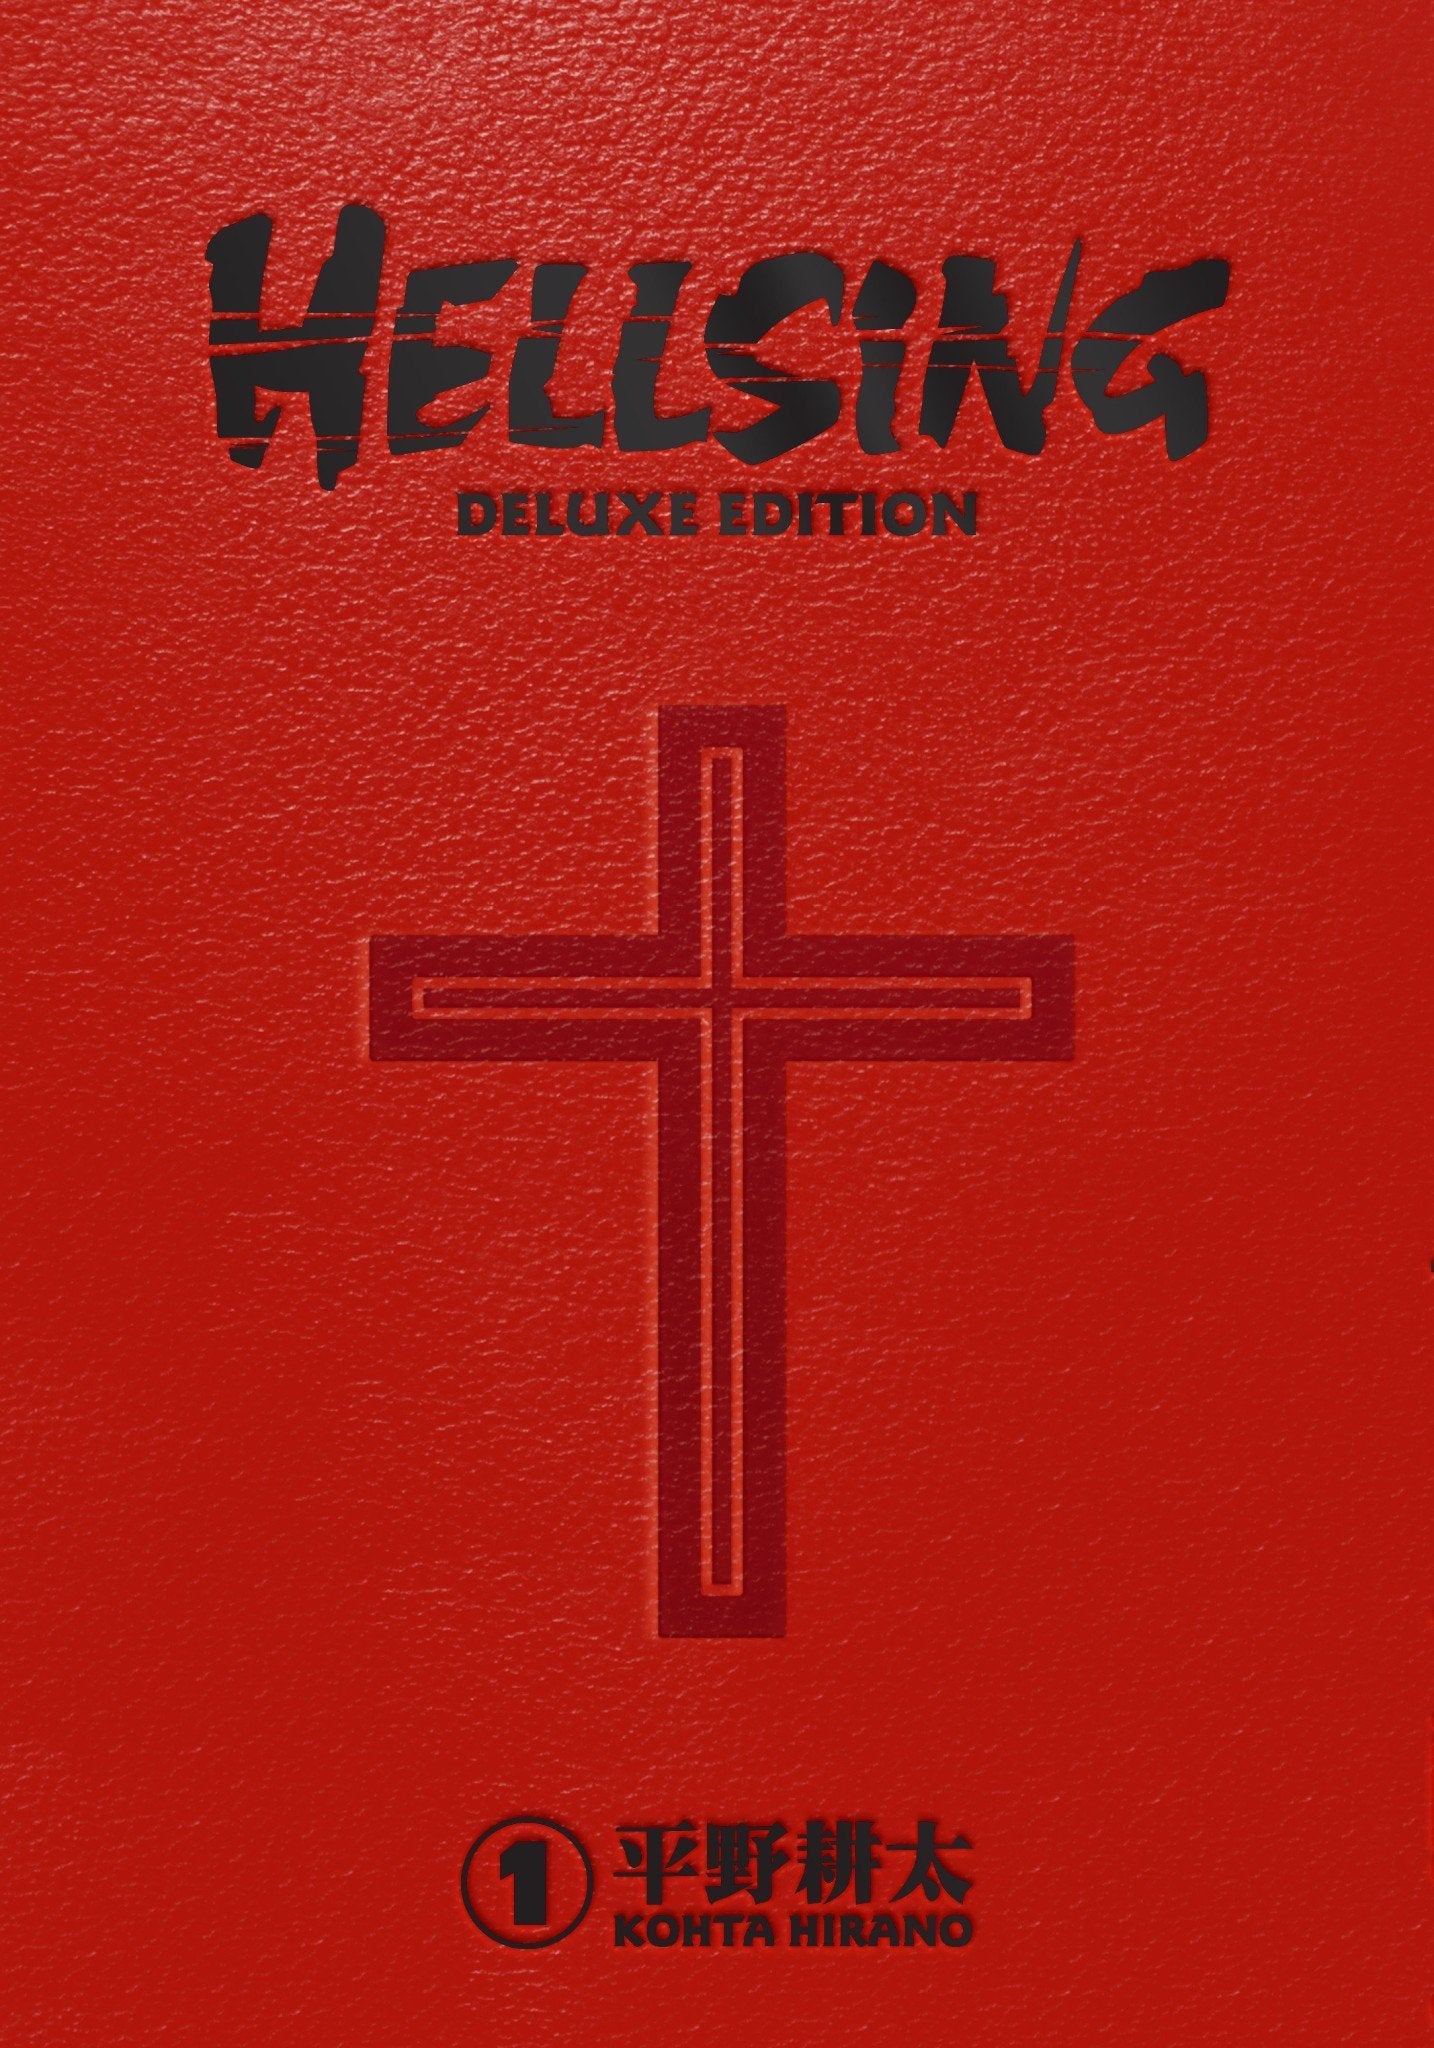 Hellsing Deluxe Hardcover Manga Volume 1 by Kohta Hirano - LV'S Global Media